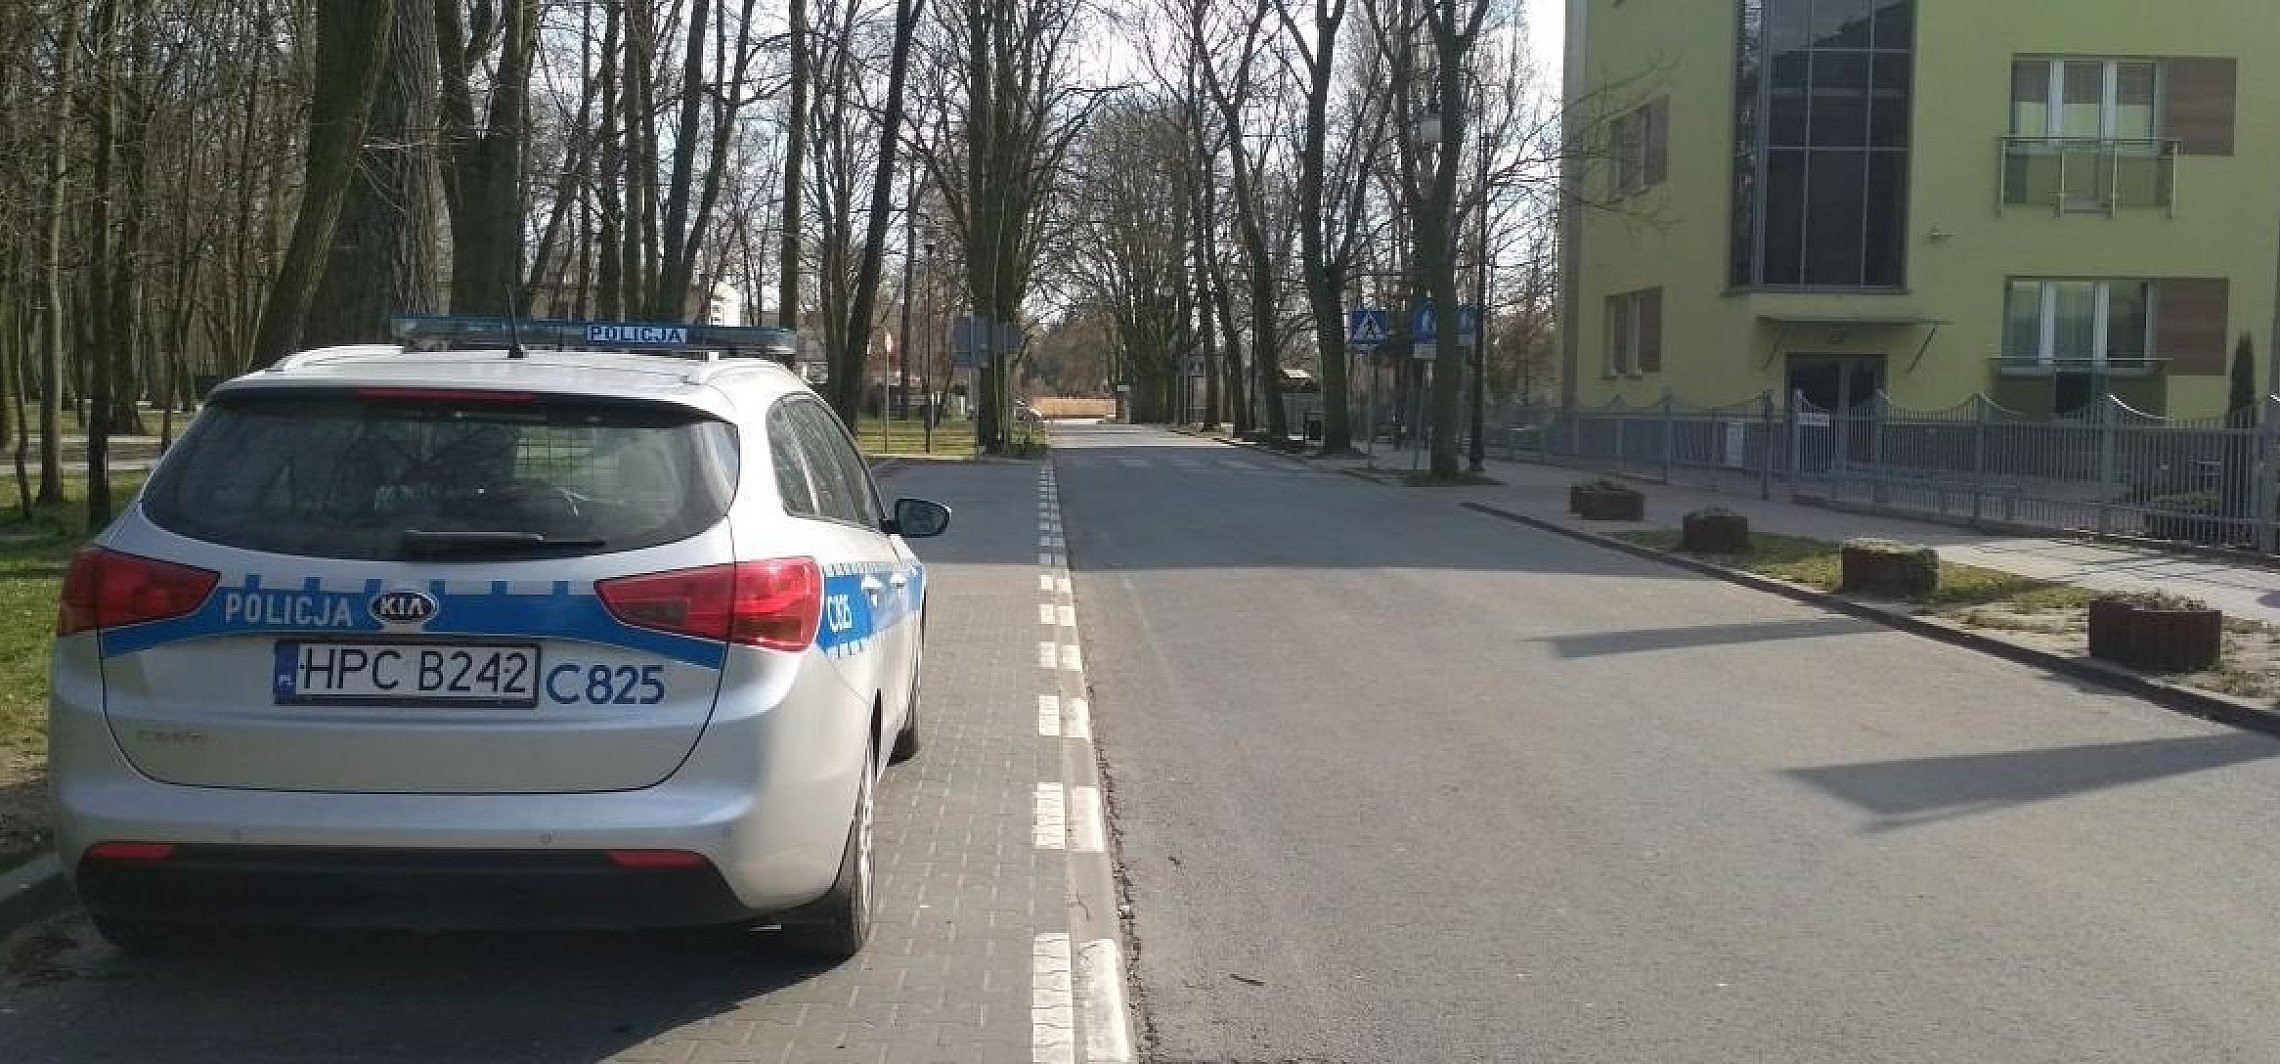 Inowrocław - Policja na ulicach po wprowadzeniu nowych zasad